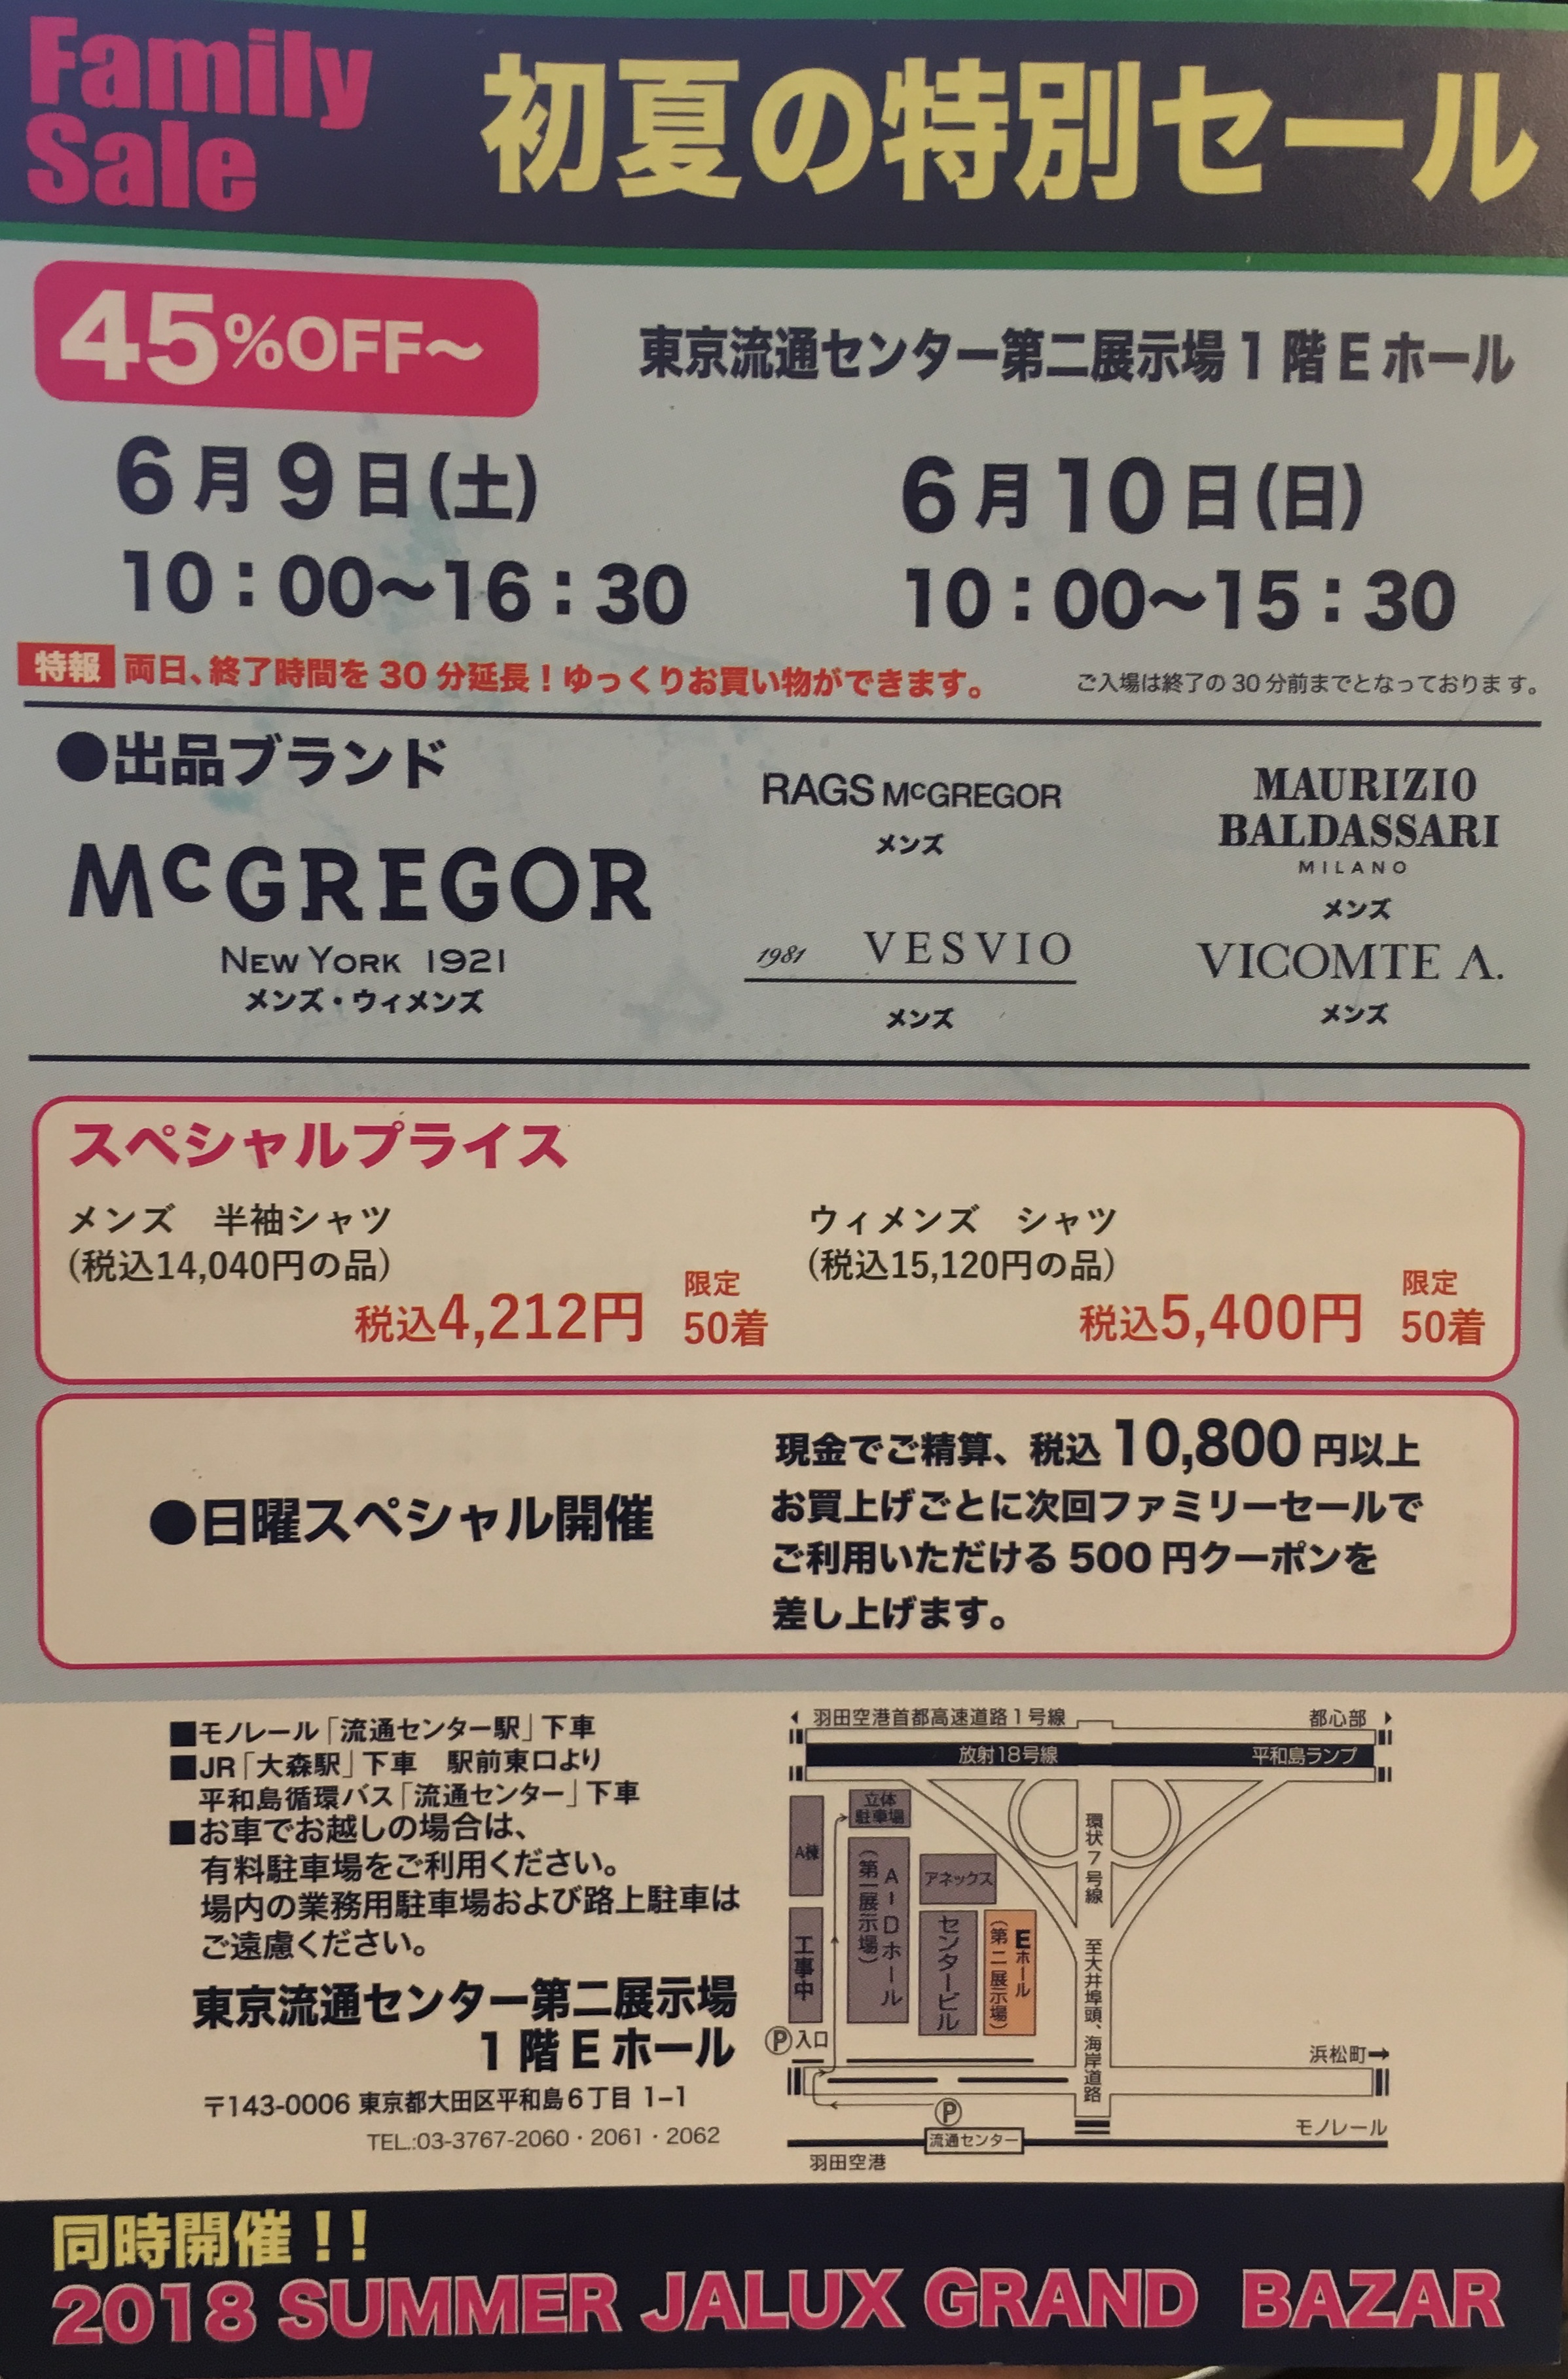 双日インフィニティ セール ファミリーセール6 9 6 10 東京 Jnop ジェノピー